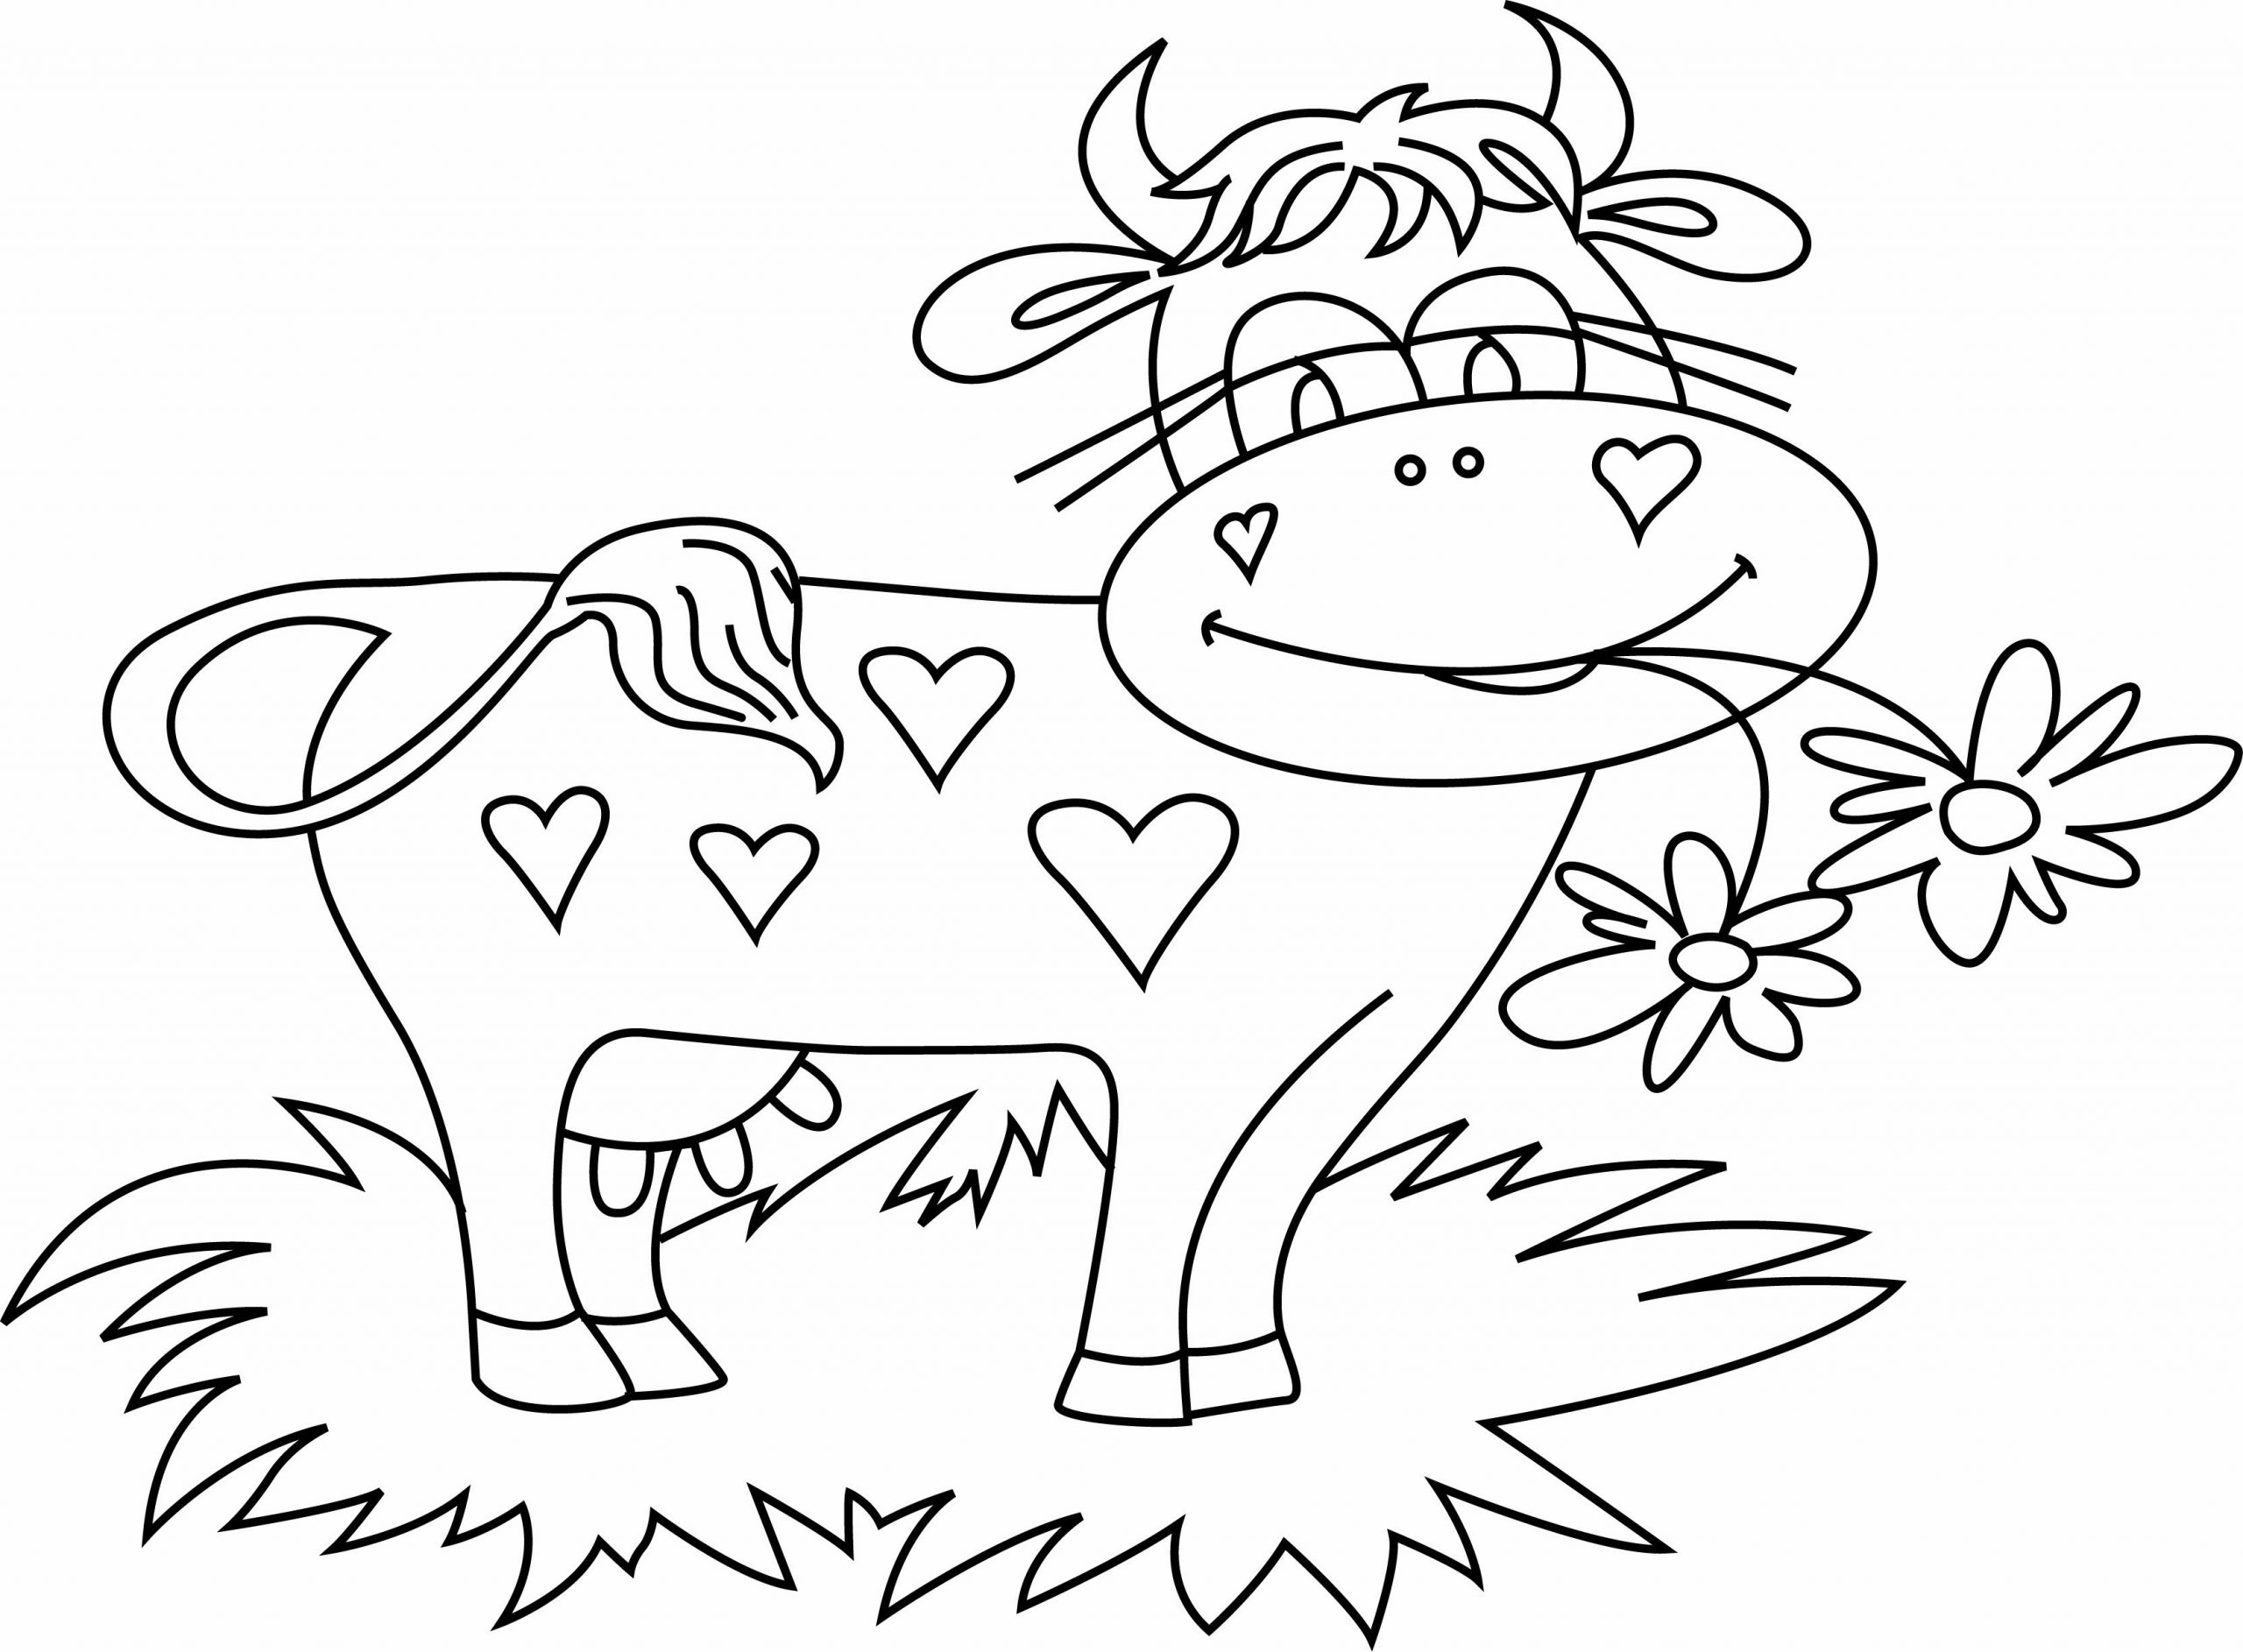 Coloriage - Animaux : Vache 14 - 10 Doigts concernant Coloriage Vache 